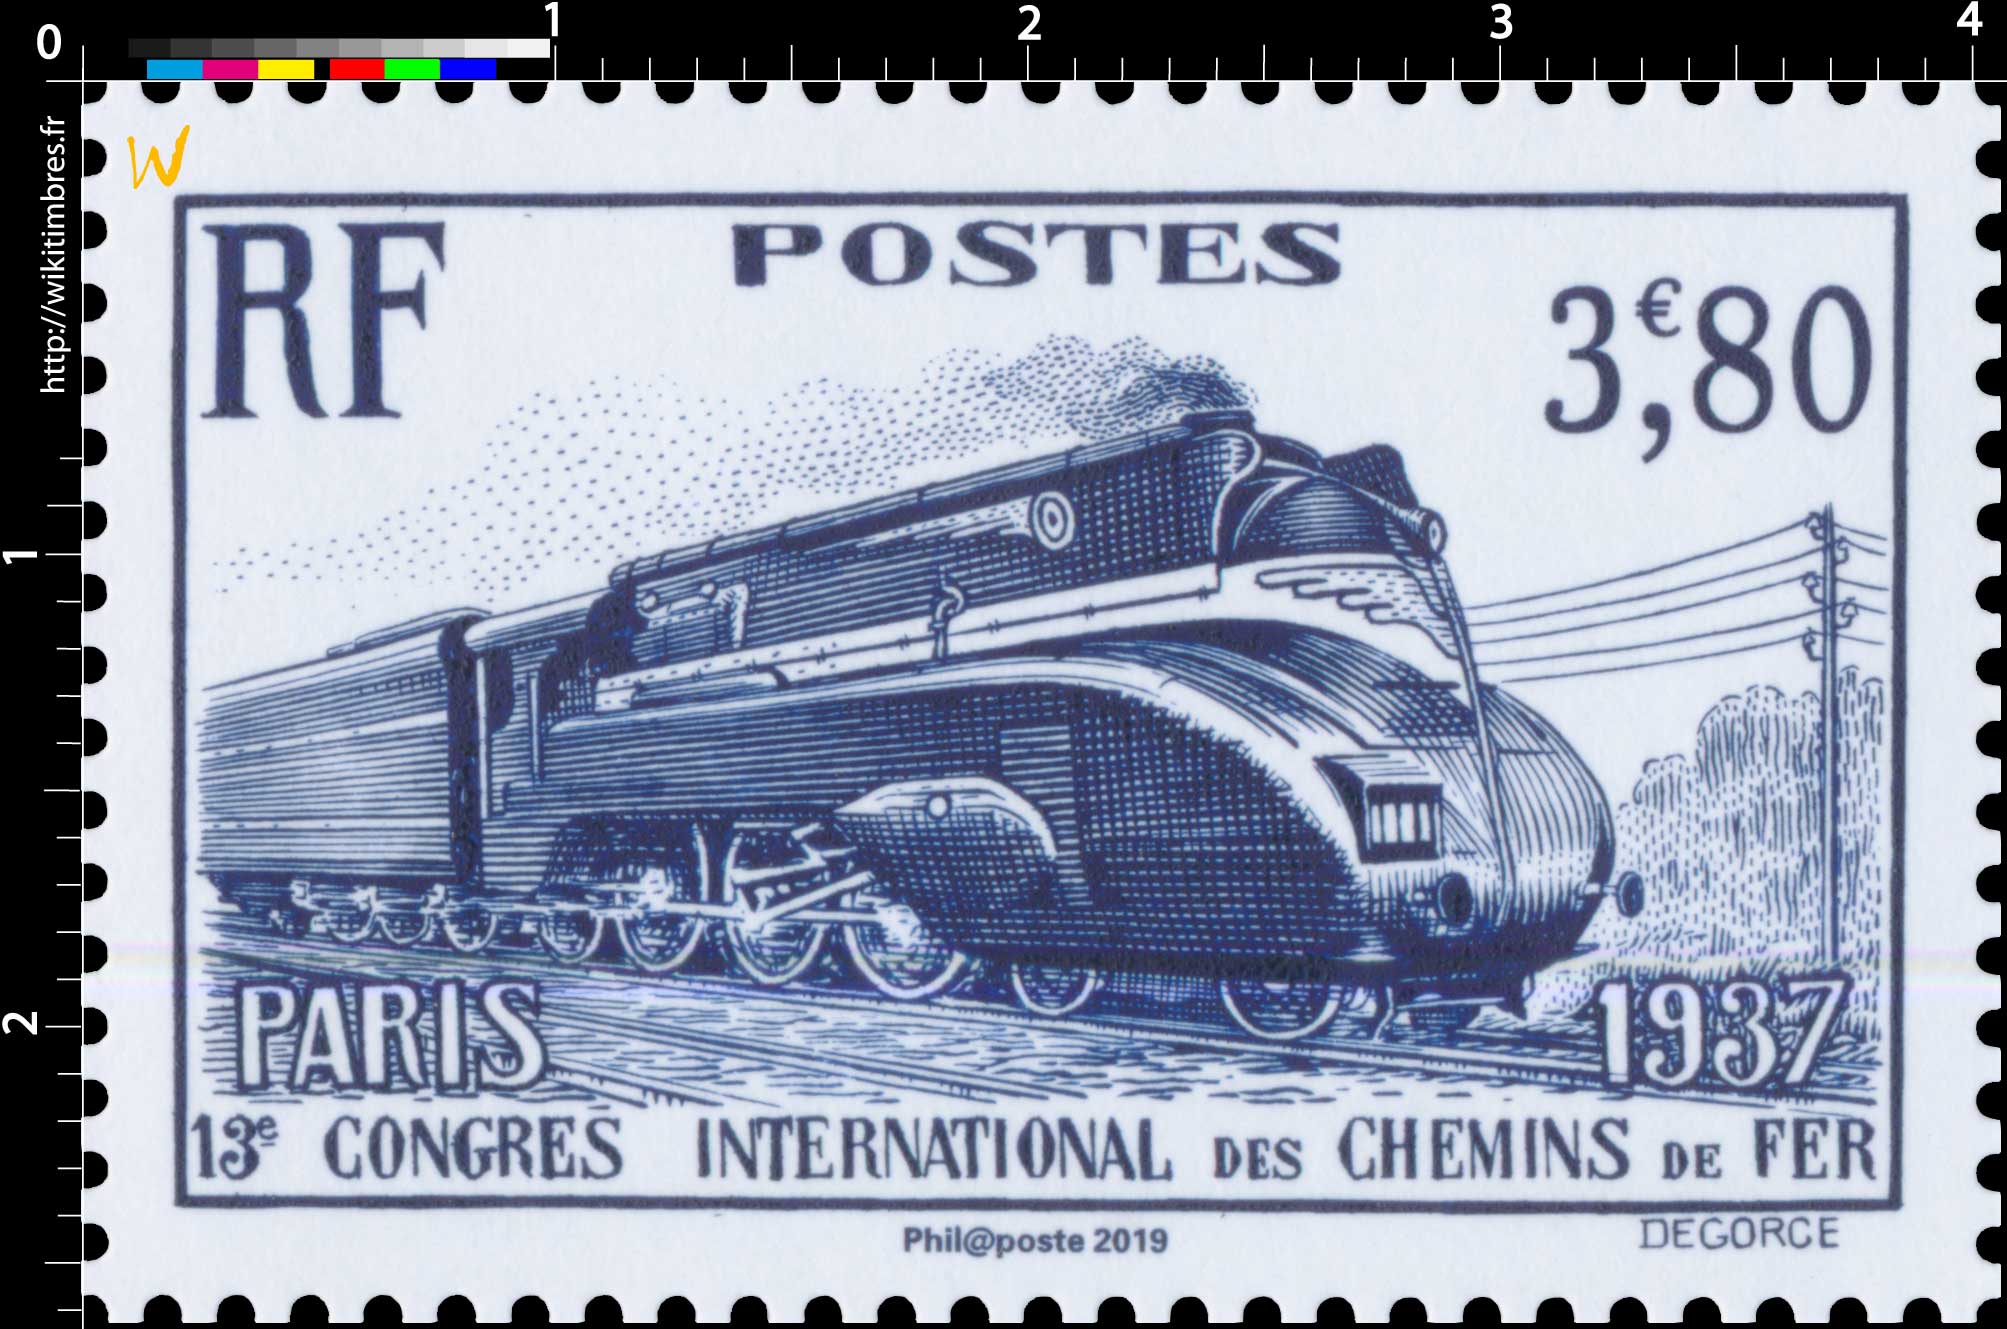 2019 Patrimoine de France - PARIS 1937 13e CONGRES INTERNATIONAL DES CHEMINS DE FER